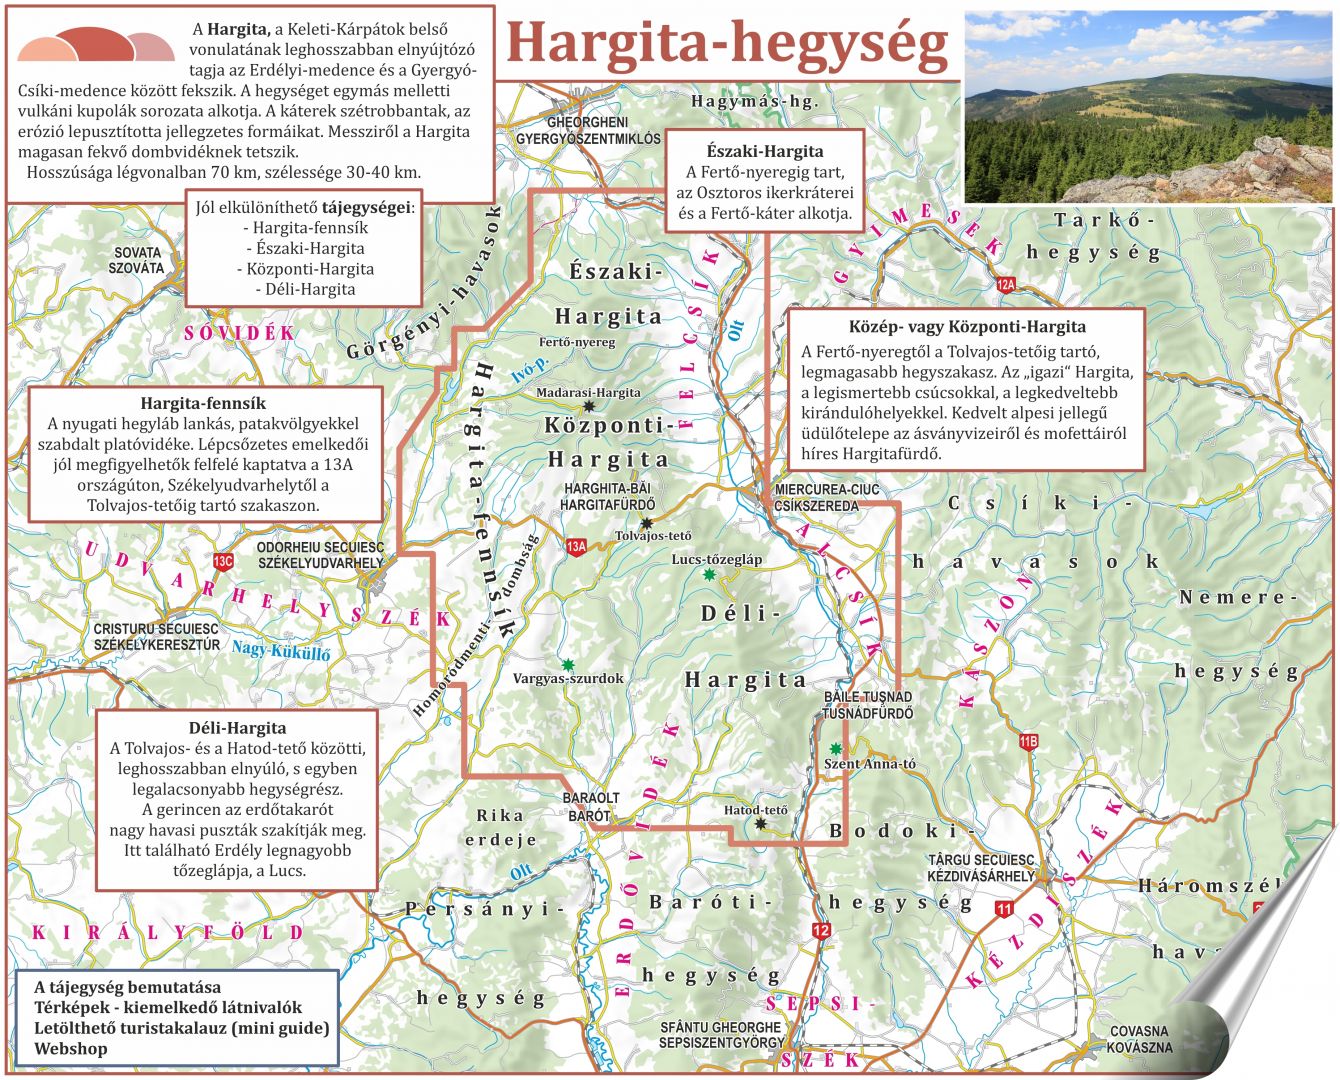 A Hargita földrajzi elhelyezkedése